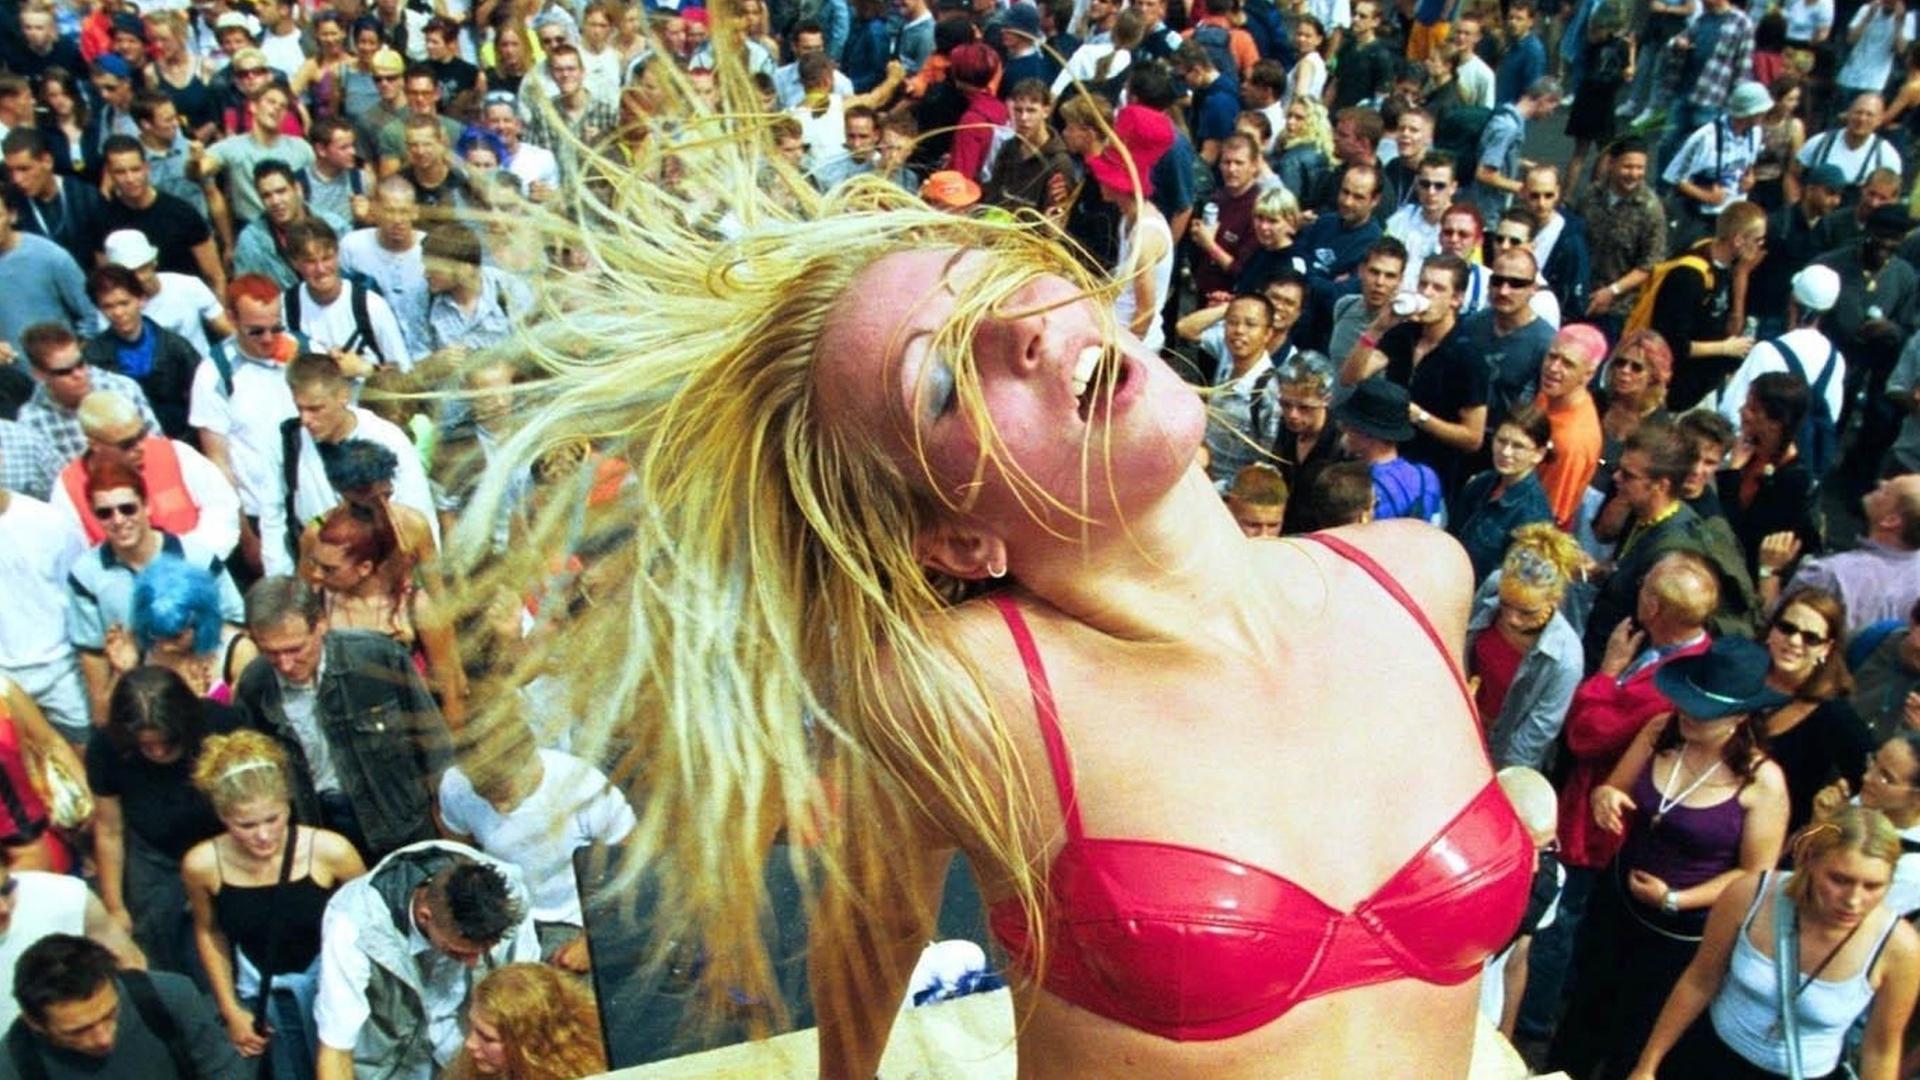 Eine blonde Frau im pinken Bikini und mit Plateauschuhen tanzt auf einem Wagen der Love Parade vor hunderten Menschen.